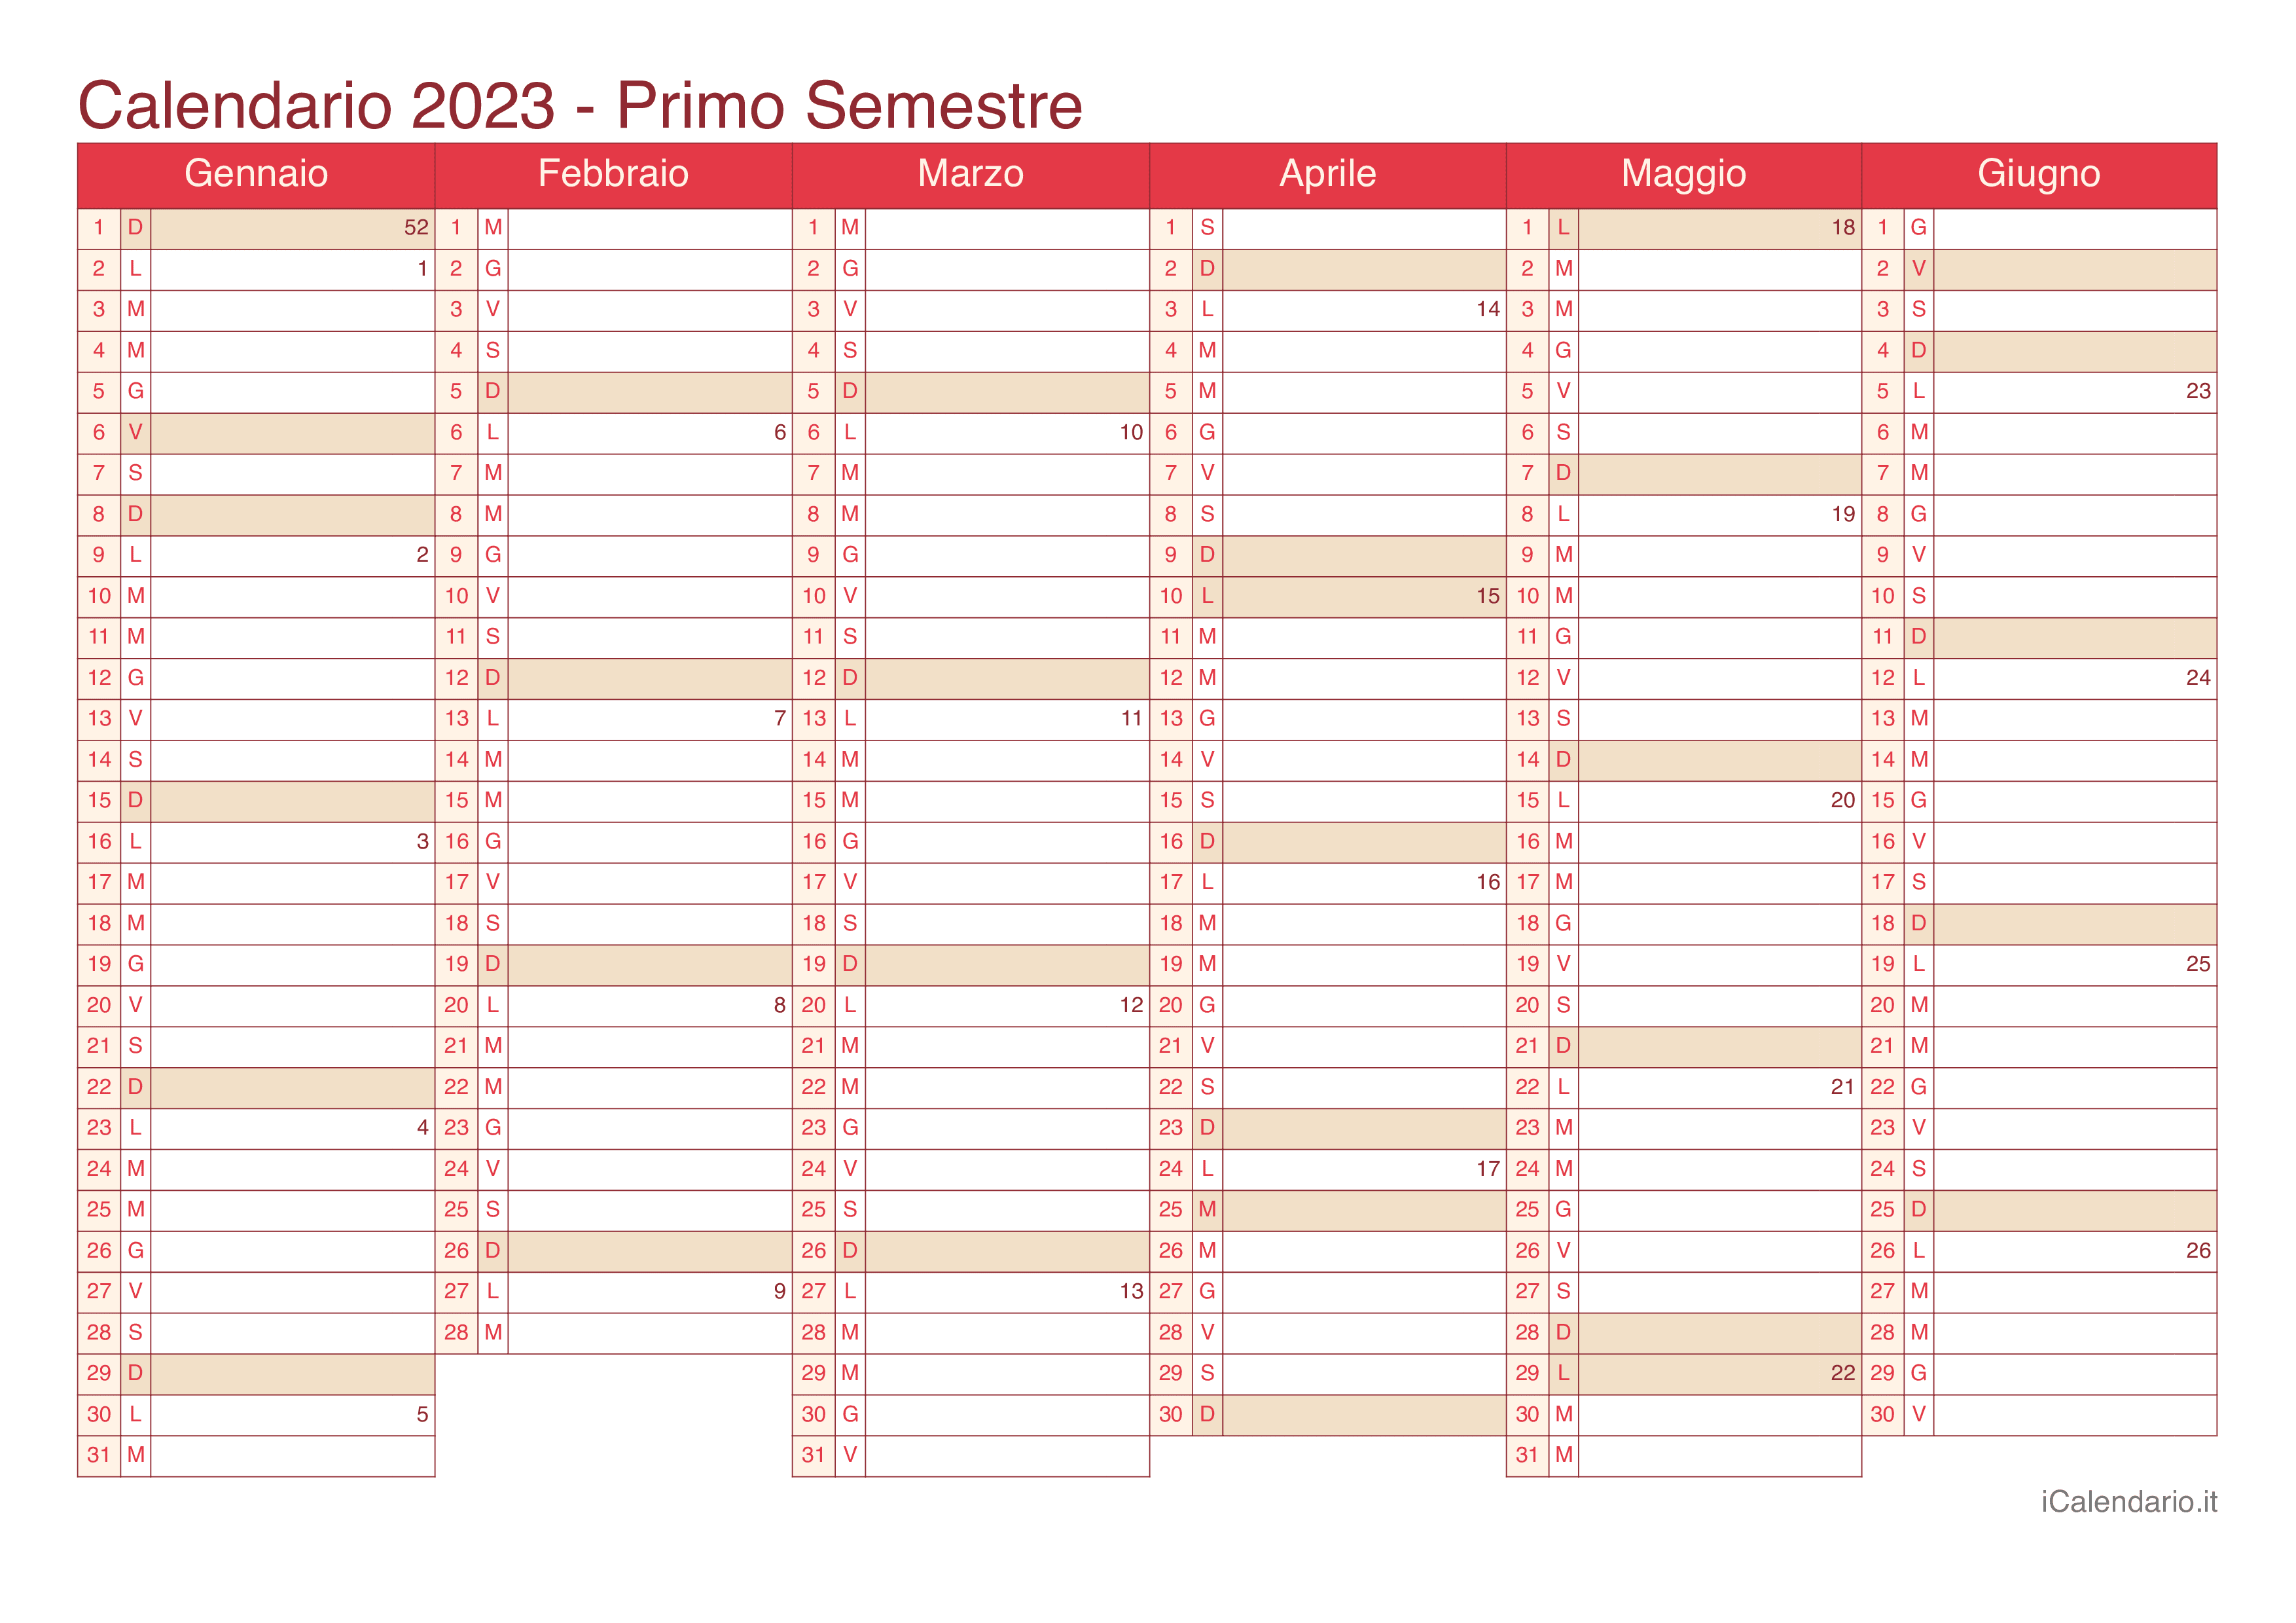 Calendario semestrale con numeri delle settimane 2023 - Cherry